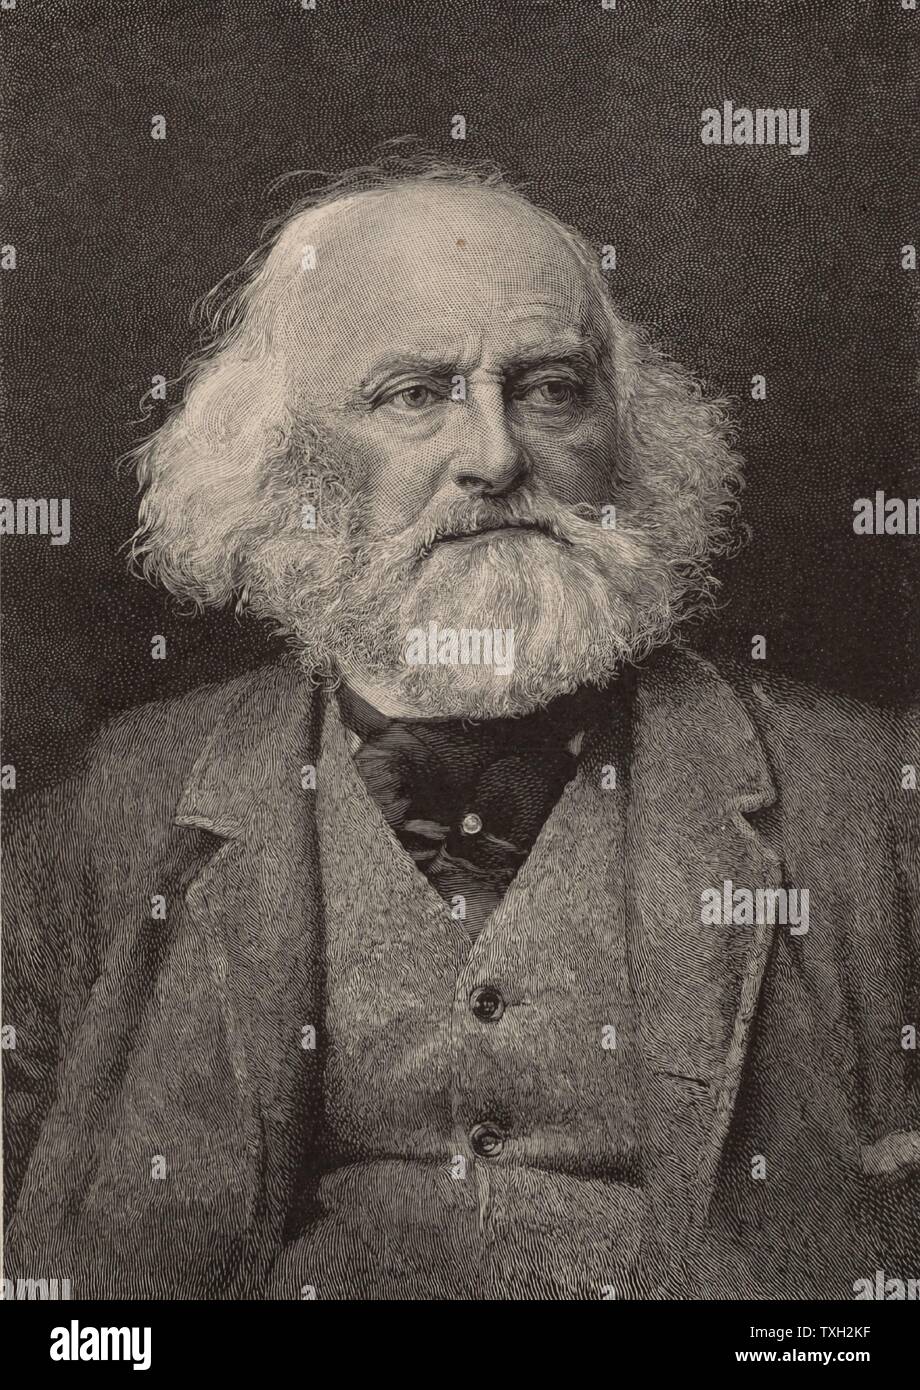 Lewis Morris Rutherford (1816-1892), avocat américain et astronome. Pionnier dans le domaine de l'analyse de spectre et de l'astrophotographie. À partir de 'Le mensuel de vulgarisation scientifique' (New York, janvier 1893). La gravure. Chercheur scientifique Banque D'Images